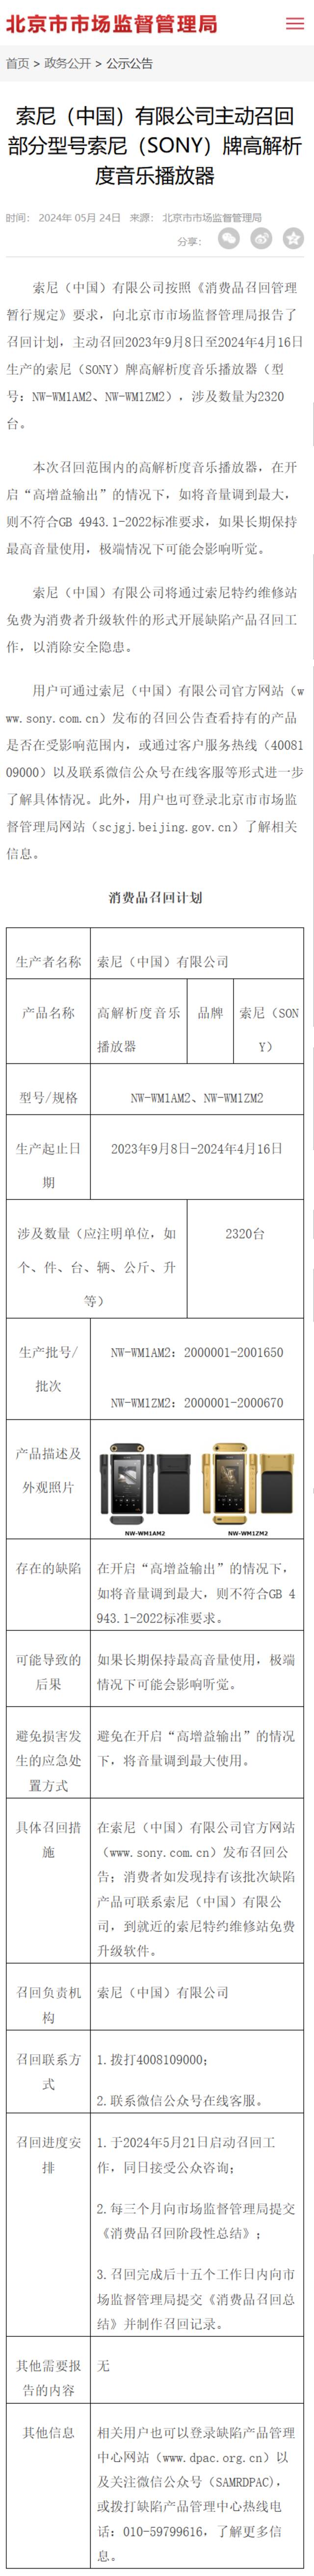 索尼中国召回 2320 台高解析度音乐播放器